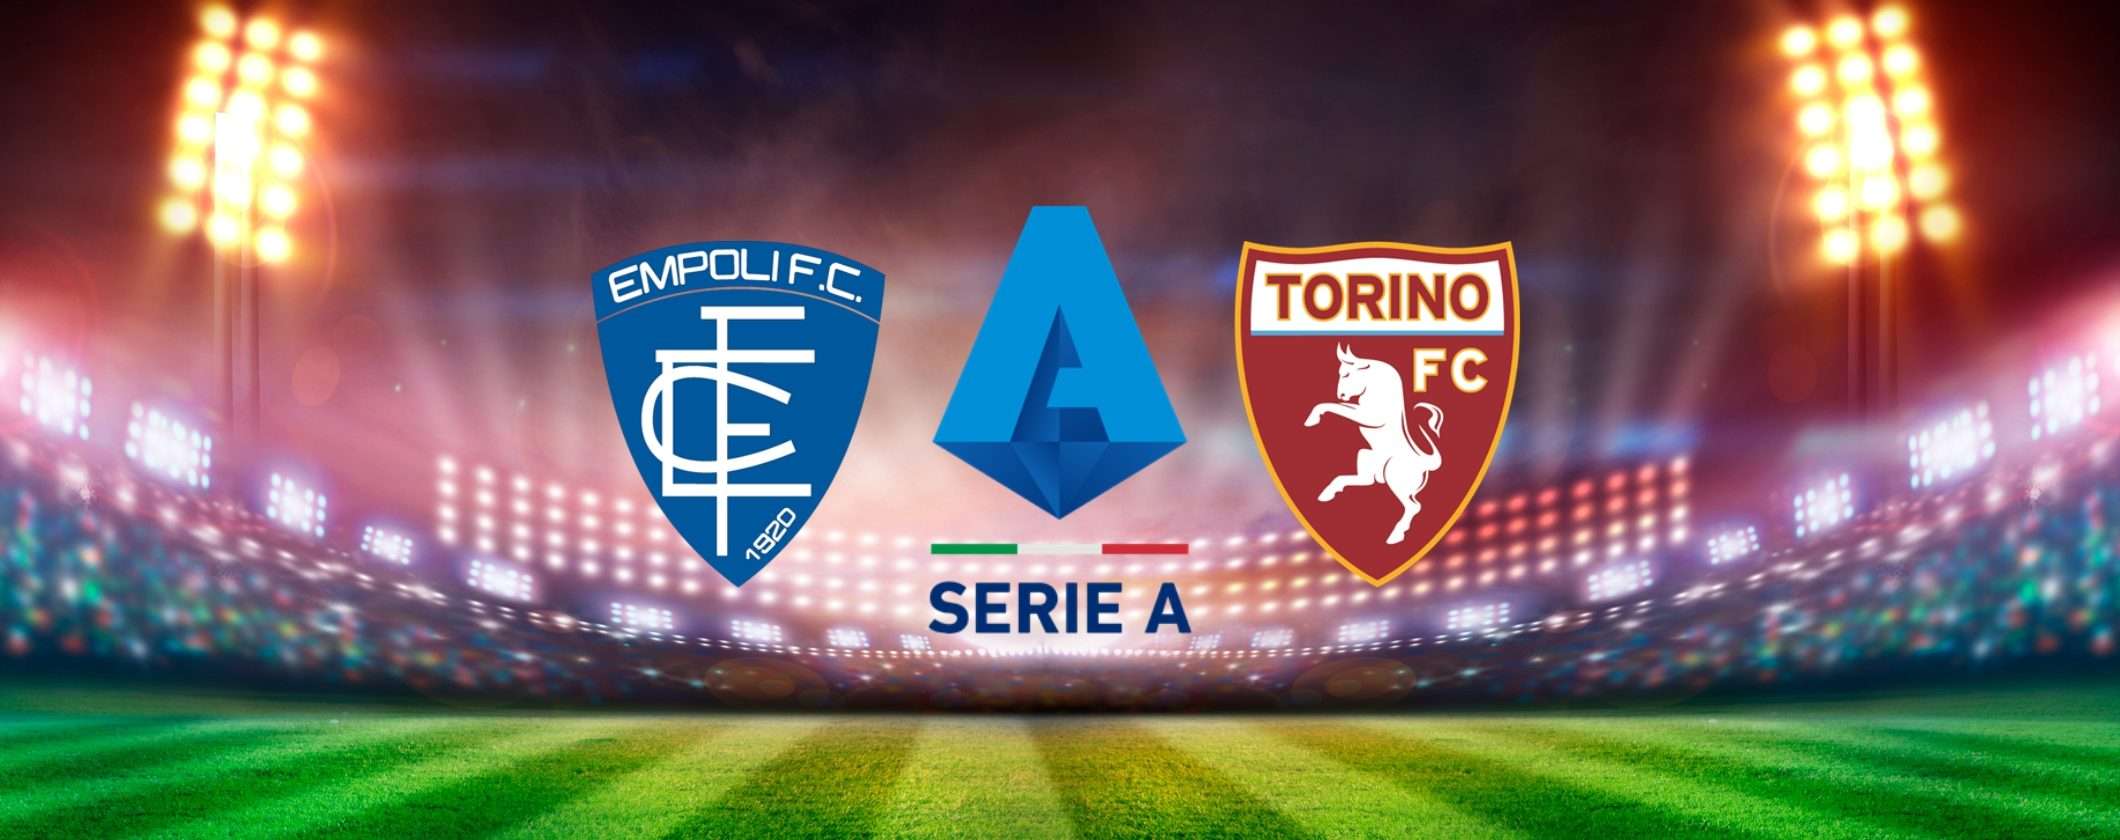 Come vedere Empoli-Torino in streaming